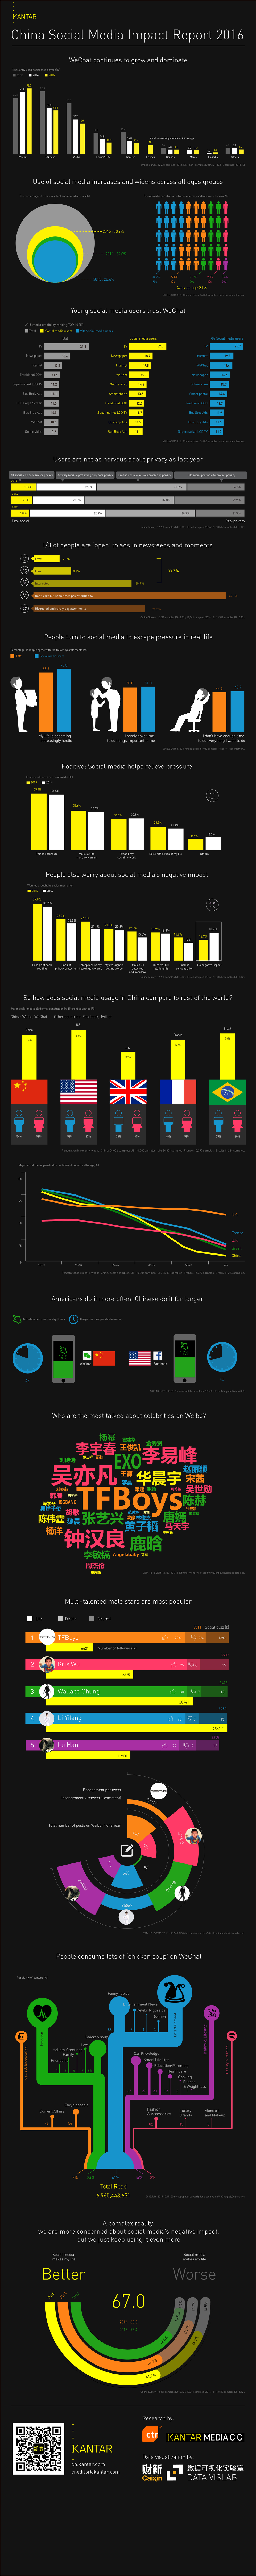 Kantar China Social Media Impact Report English infographic